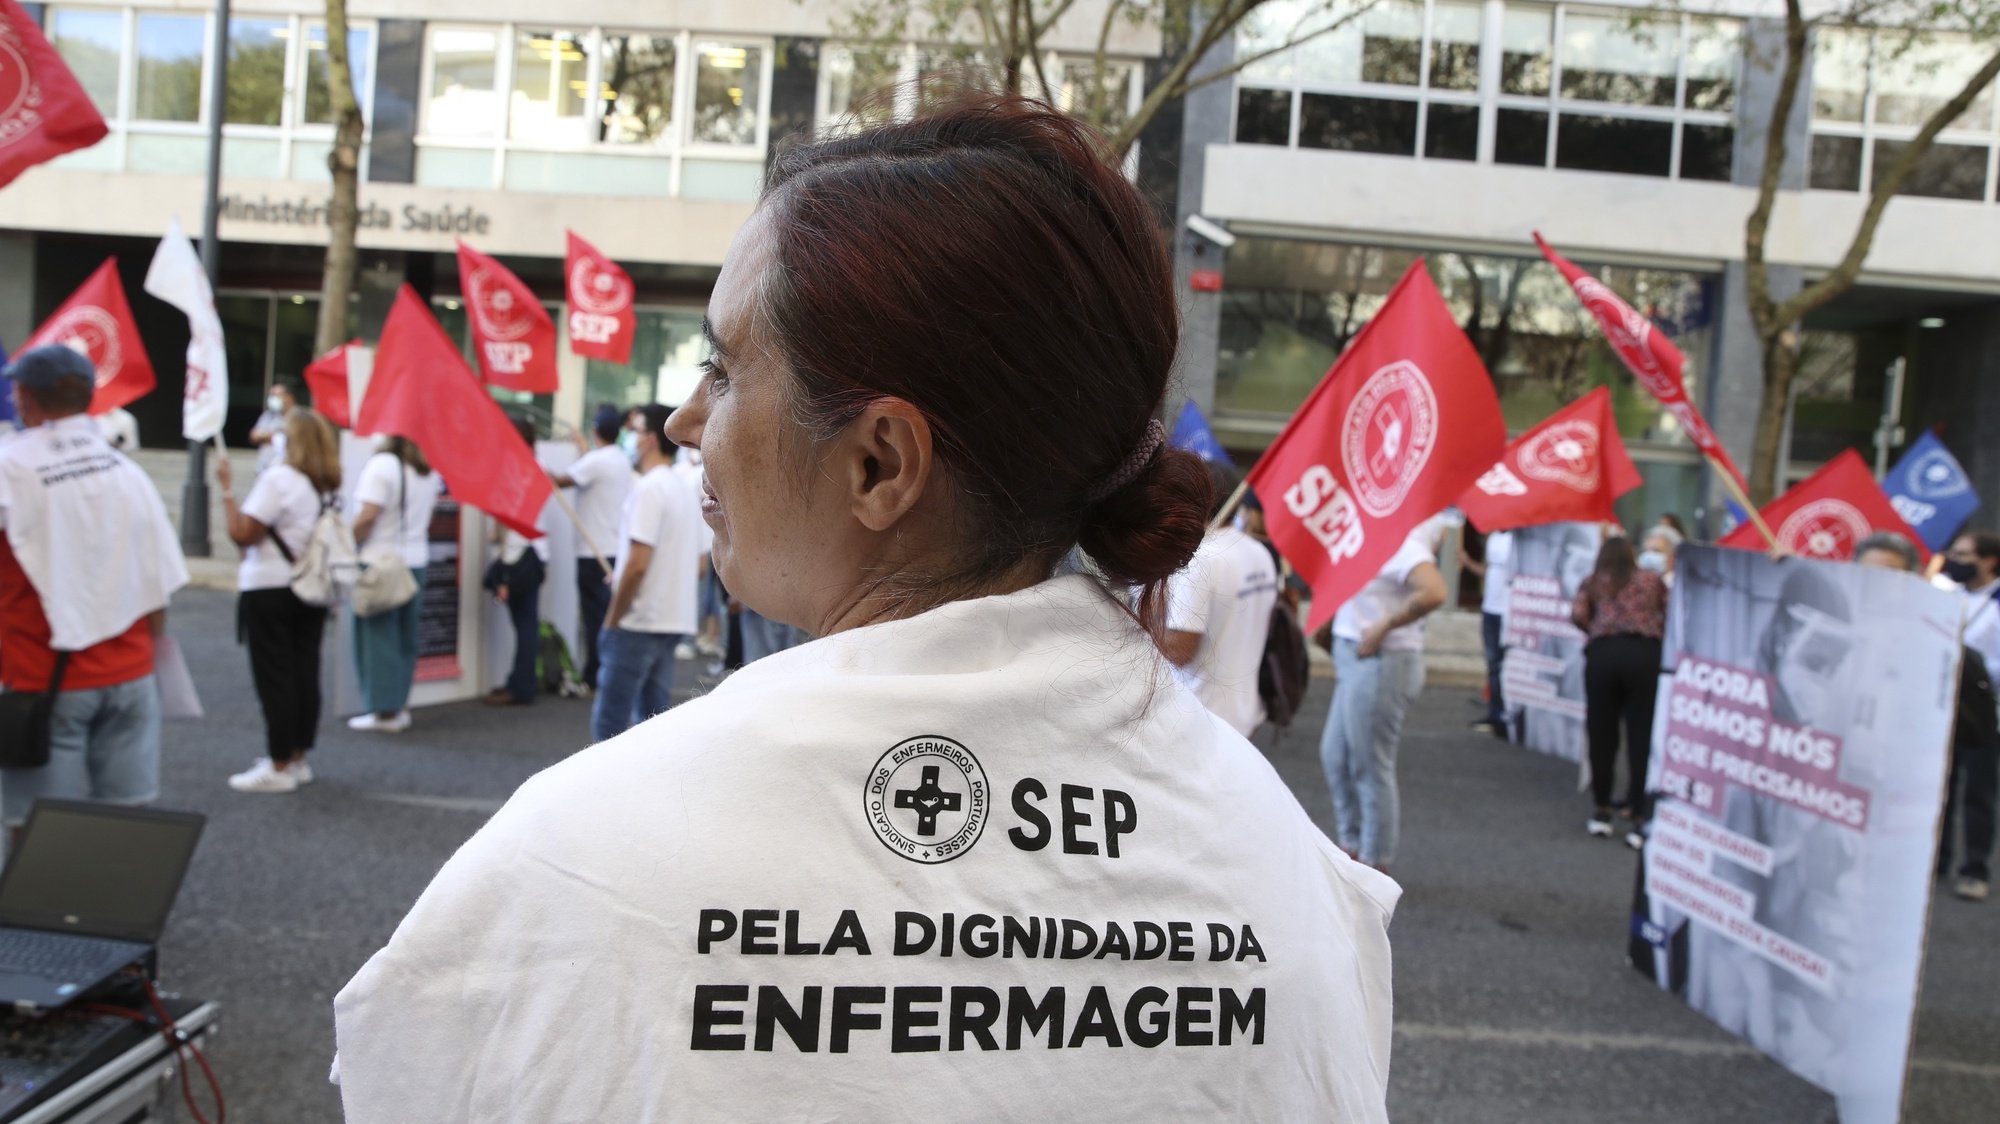 Manifestação do SEP - Sindicato dos Enfermeiros Portugueses, junto ao Ministério da Saúde, Lisboa, 12 de outubro de 2021.  MANUEL DE ALMEIDA/LUSA